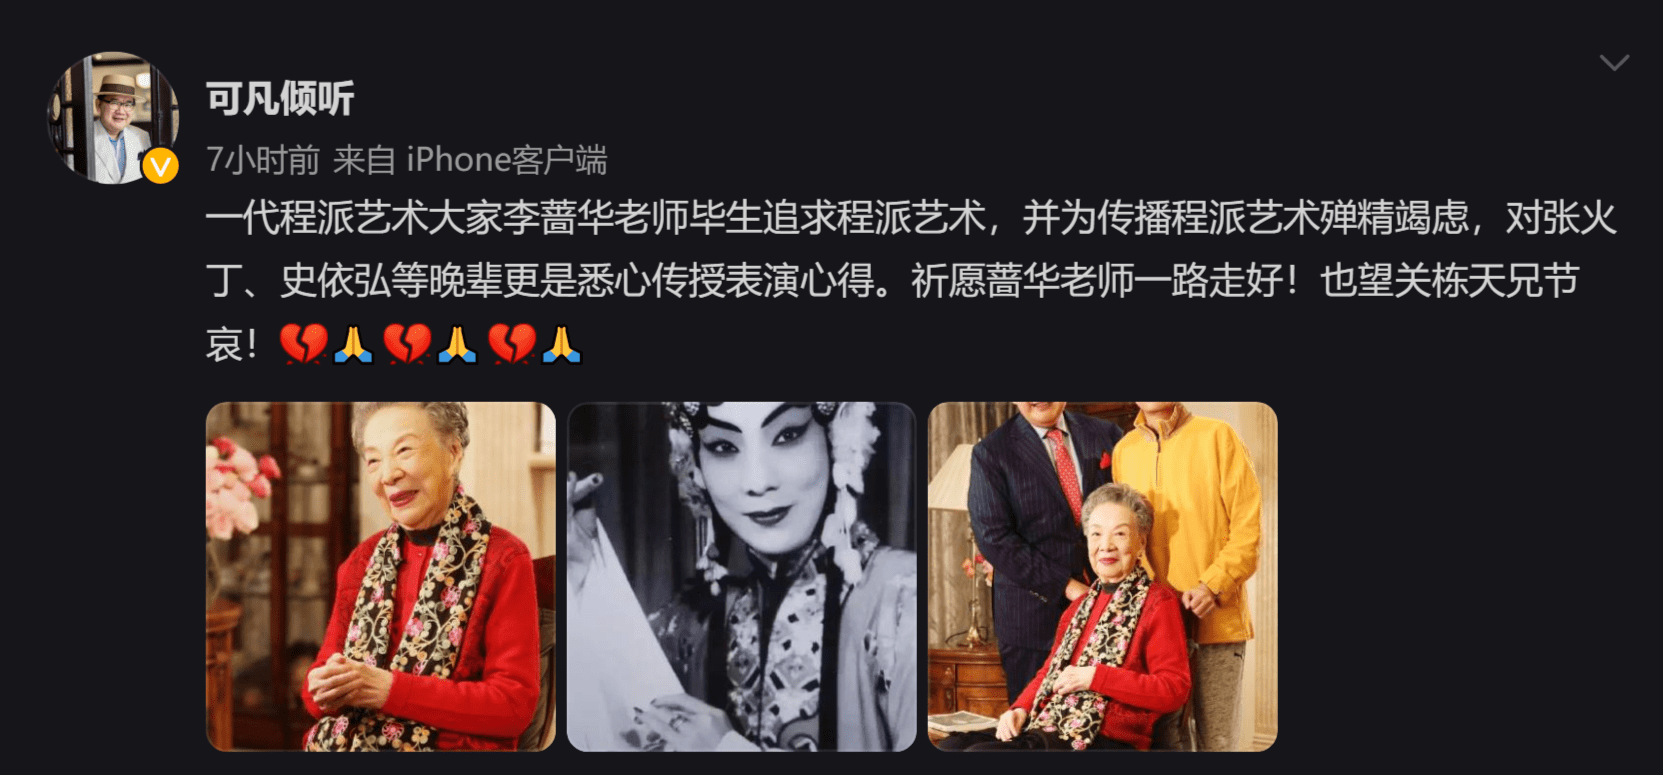 京剧表演艺术家李蔷华去世 曾是武汉京剧团十大主演之一